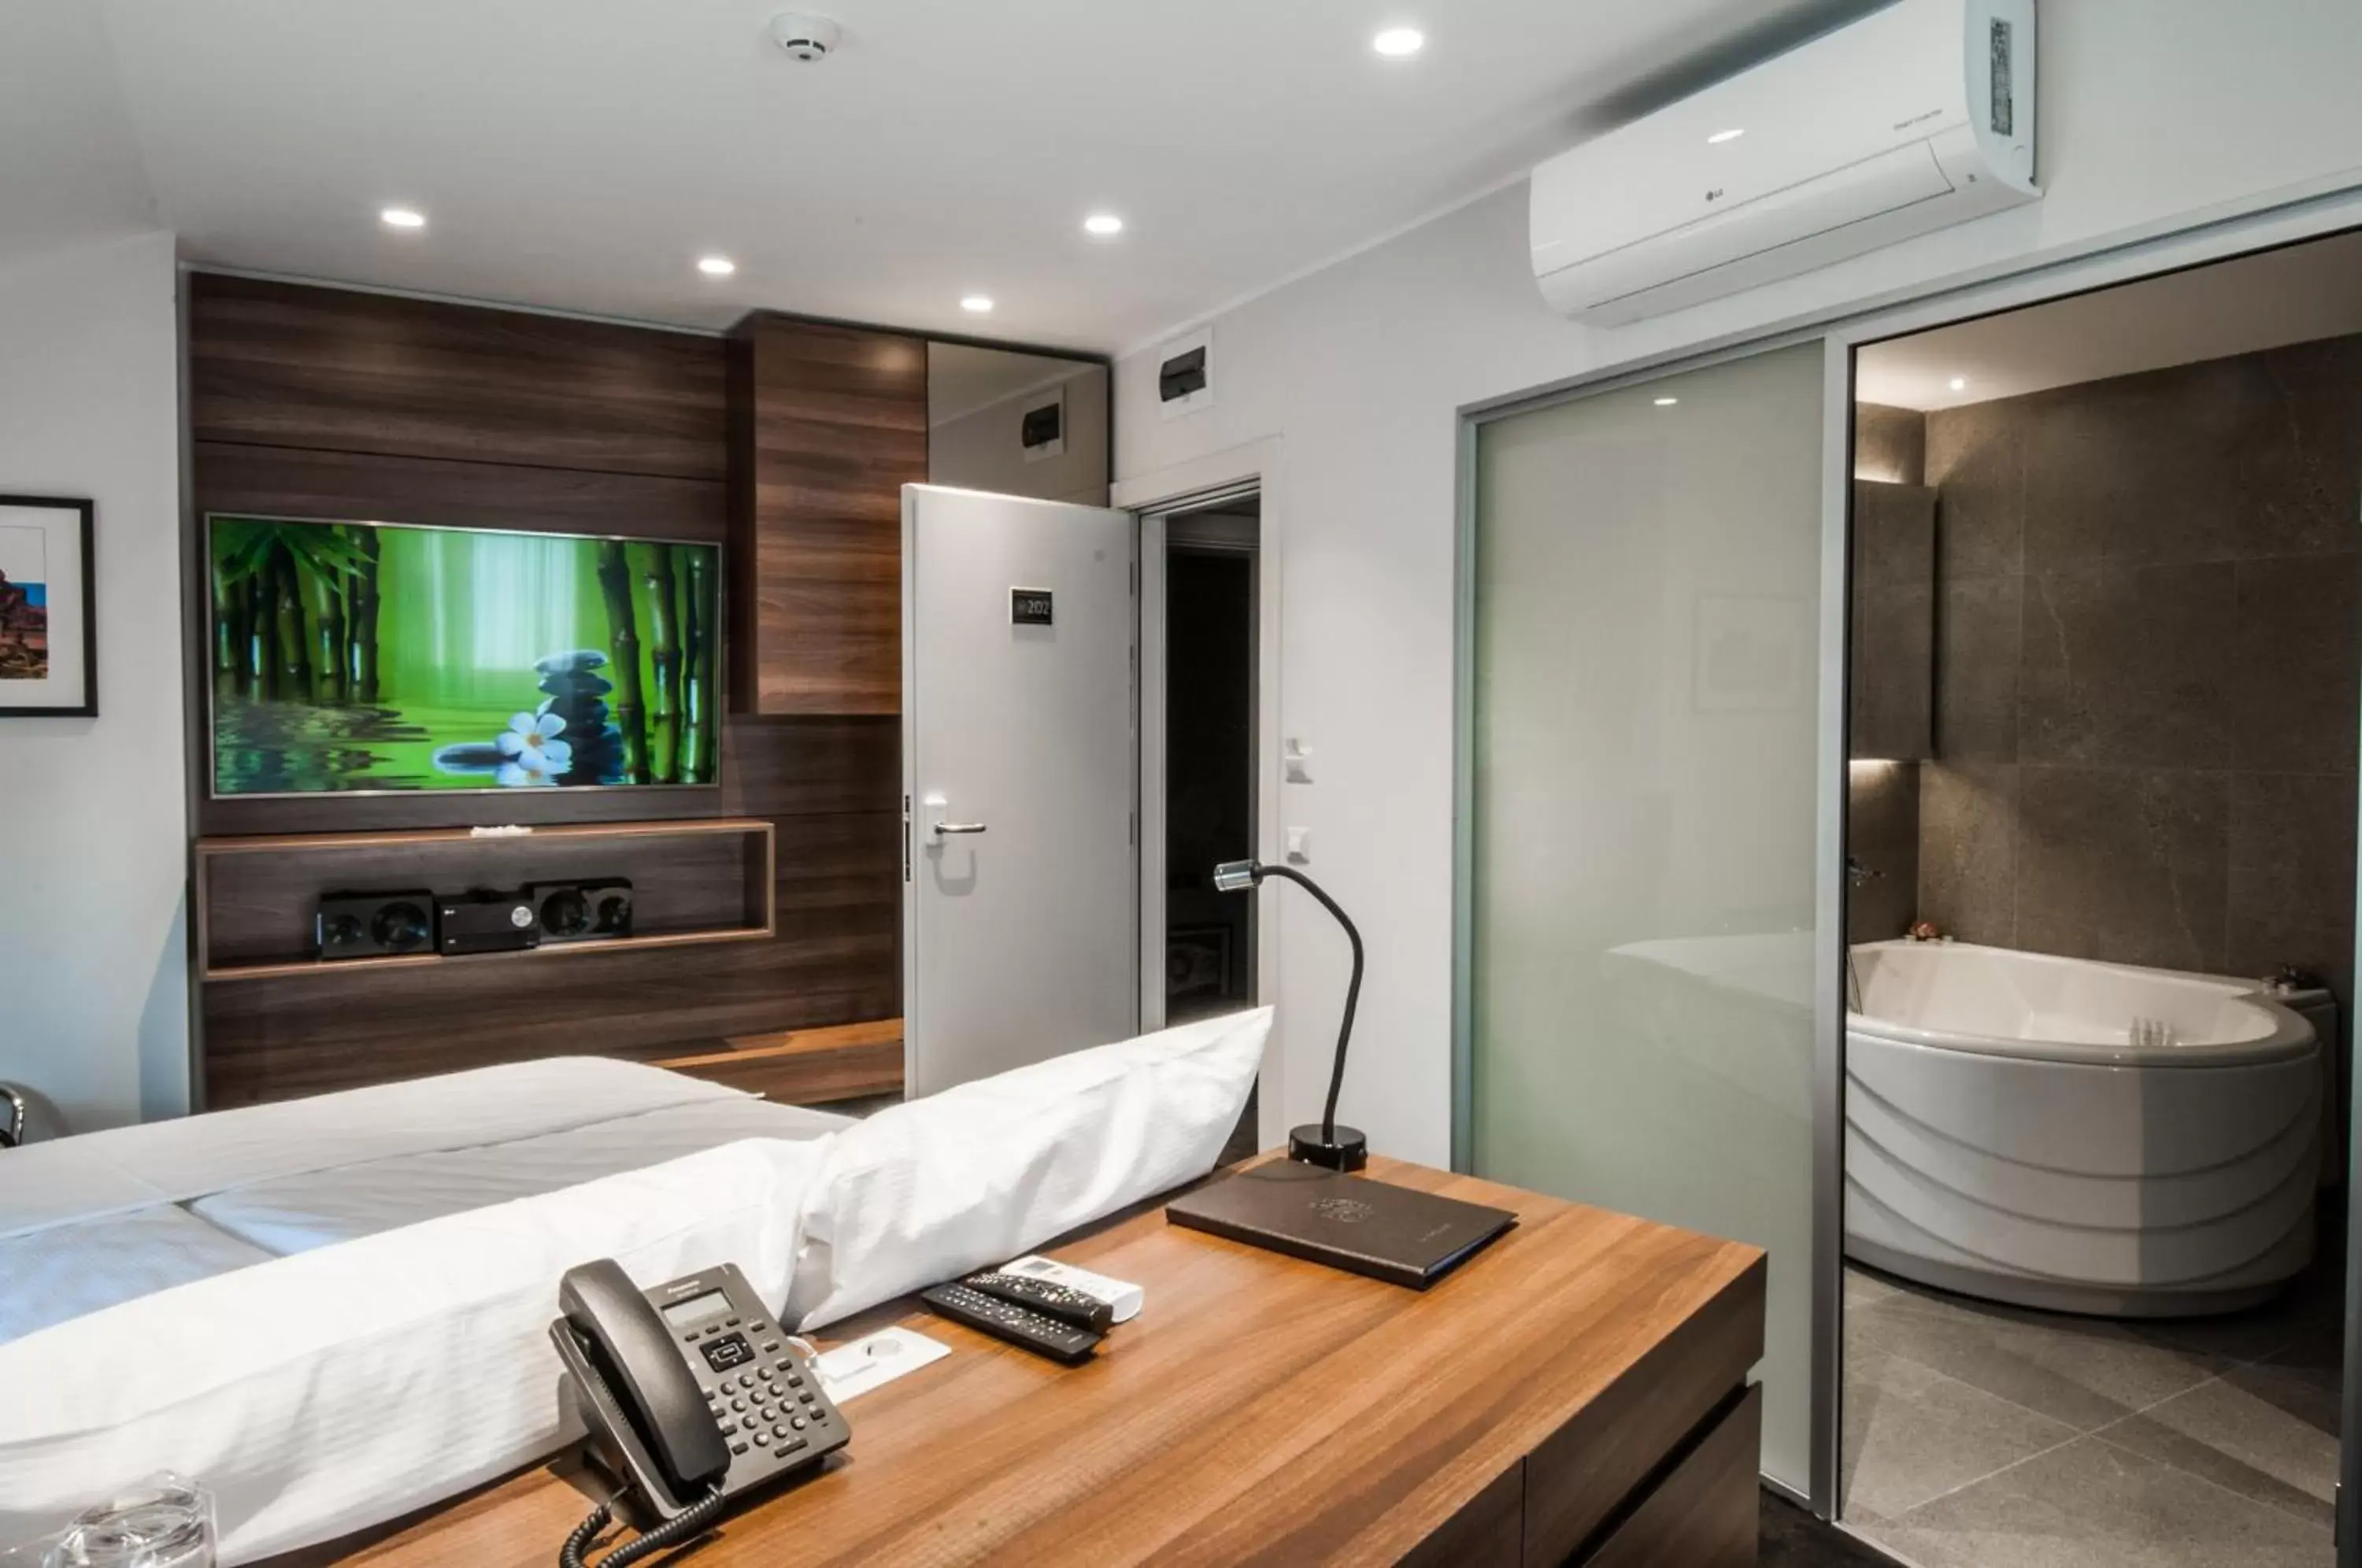 Bed, Bathroom in Best Western Premier Natalija Residence